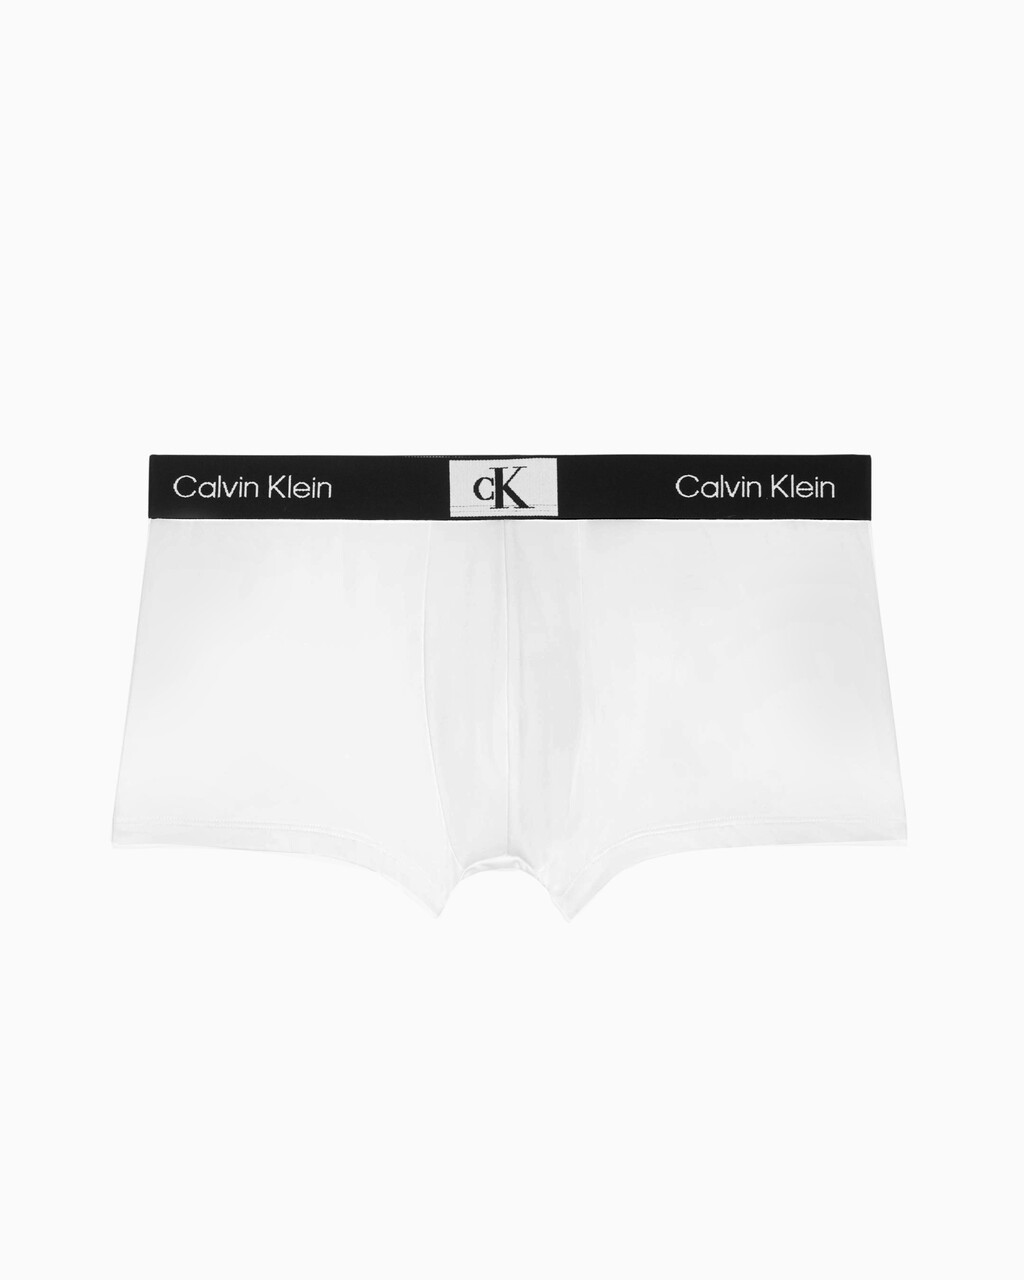 CALVIN KLEIN 1996 微細纖維低腰內褲, White, hi-res